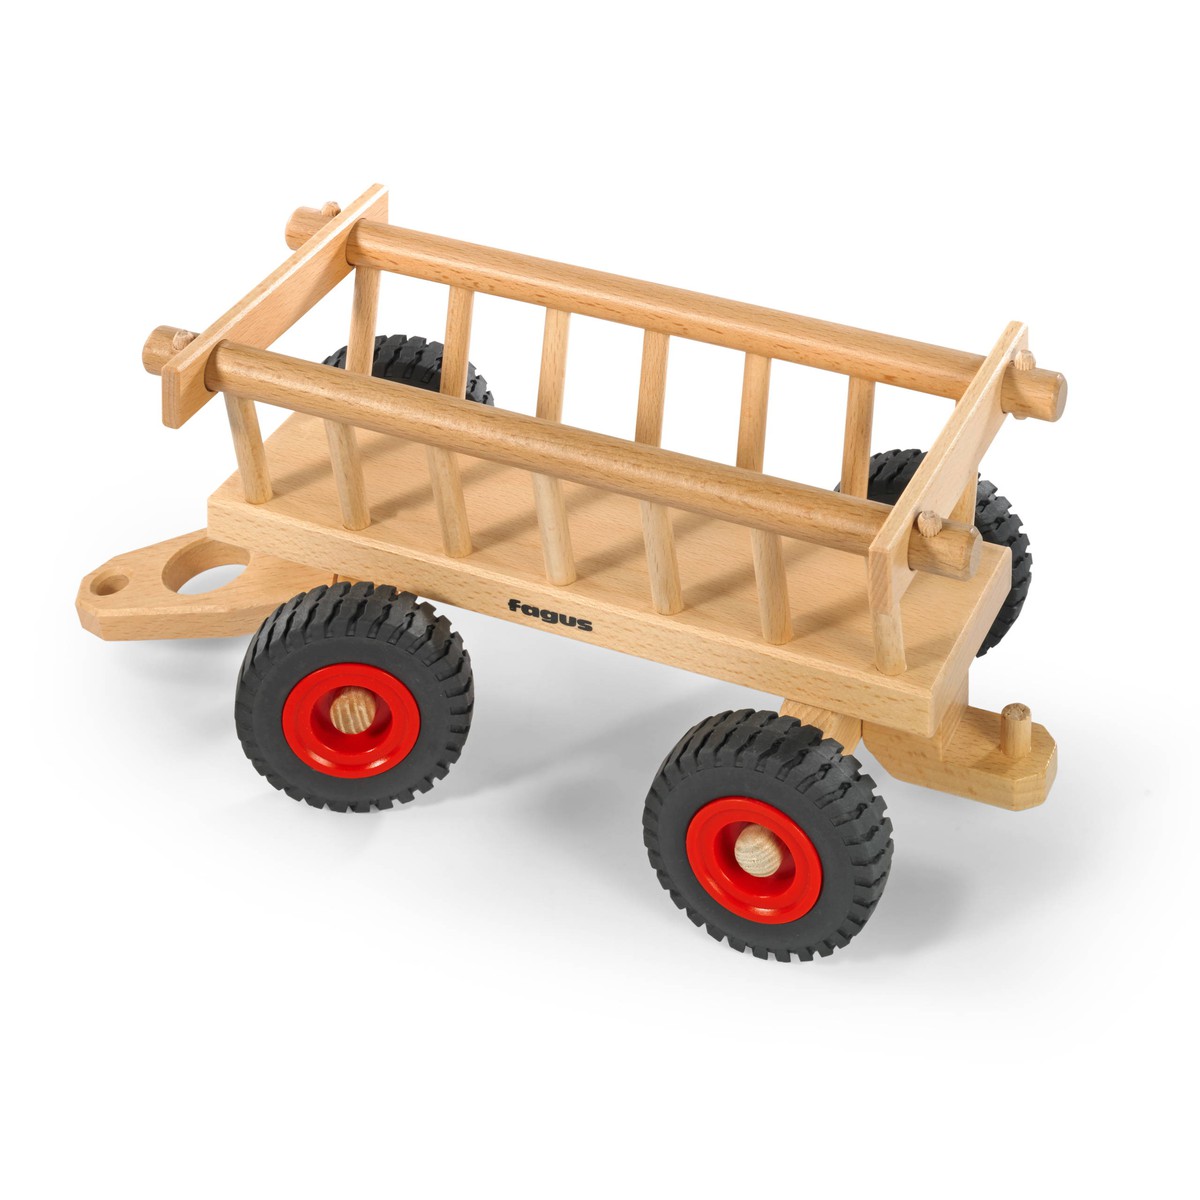   Chariot à foin en bois Fagus  29.5x14.5x12cm